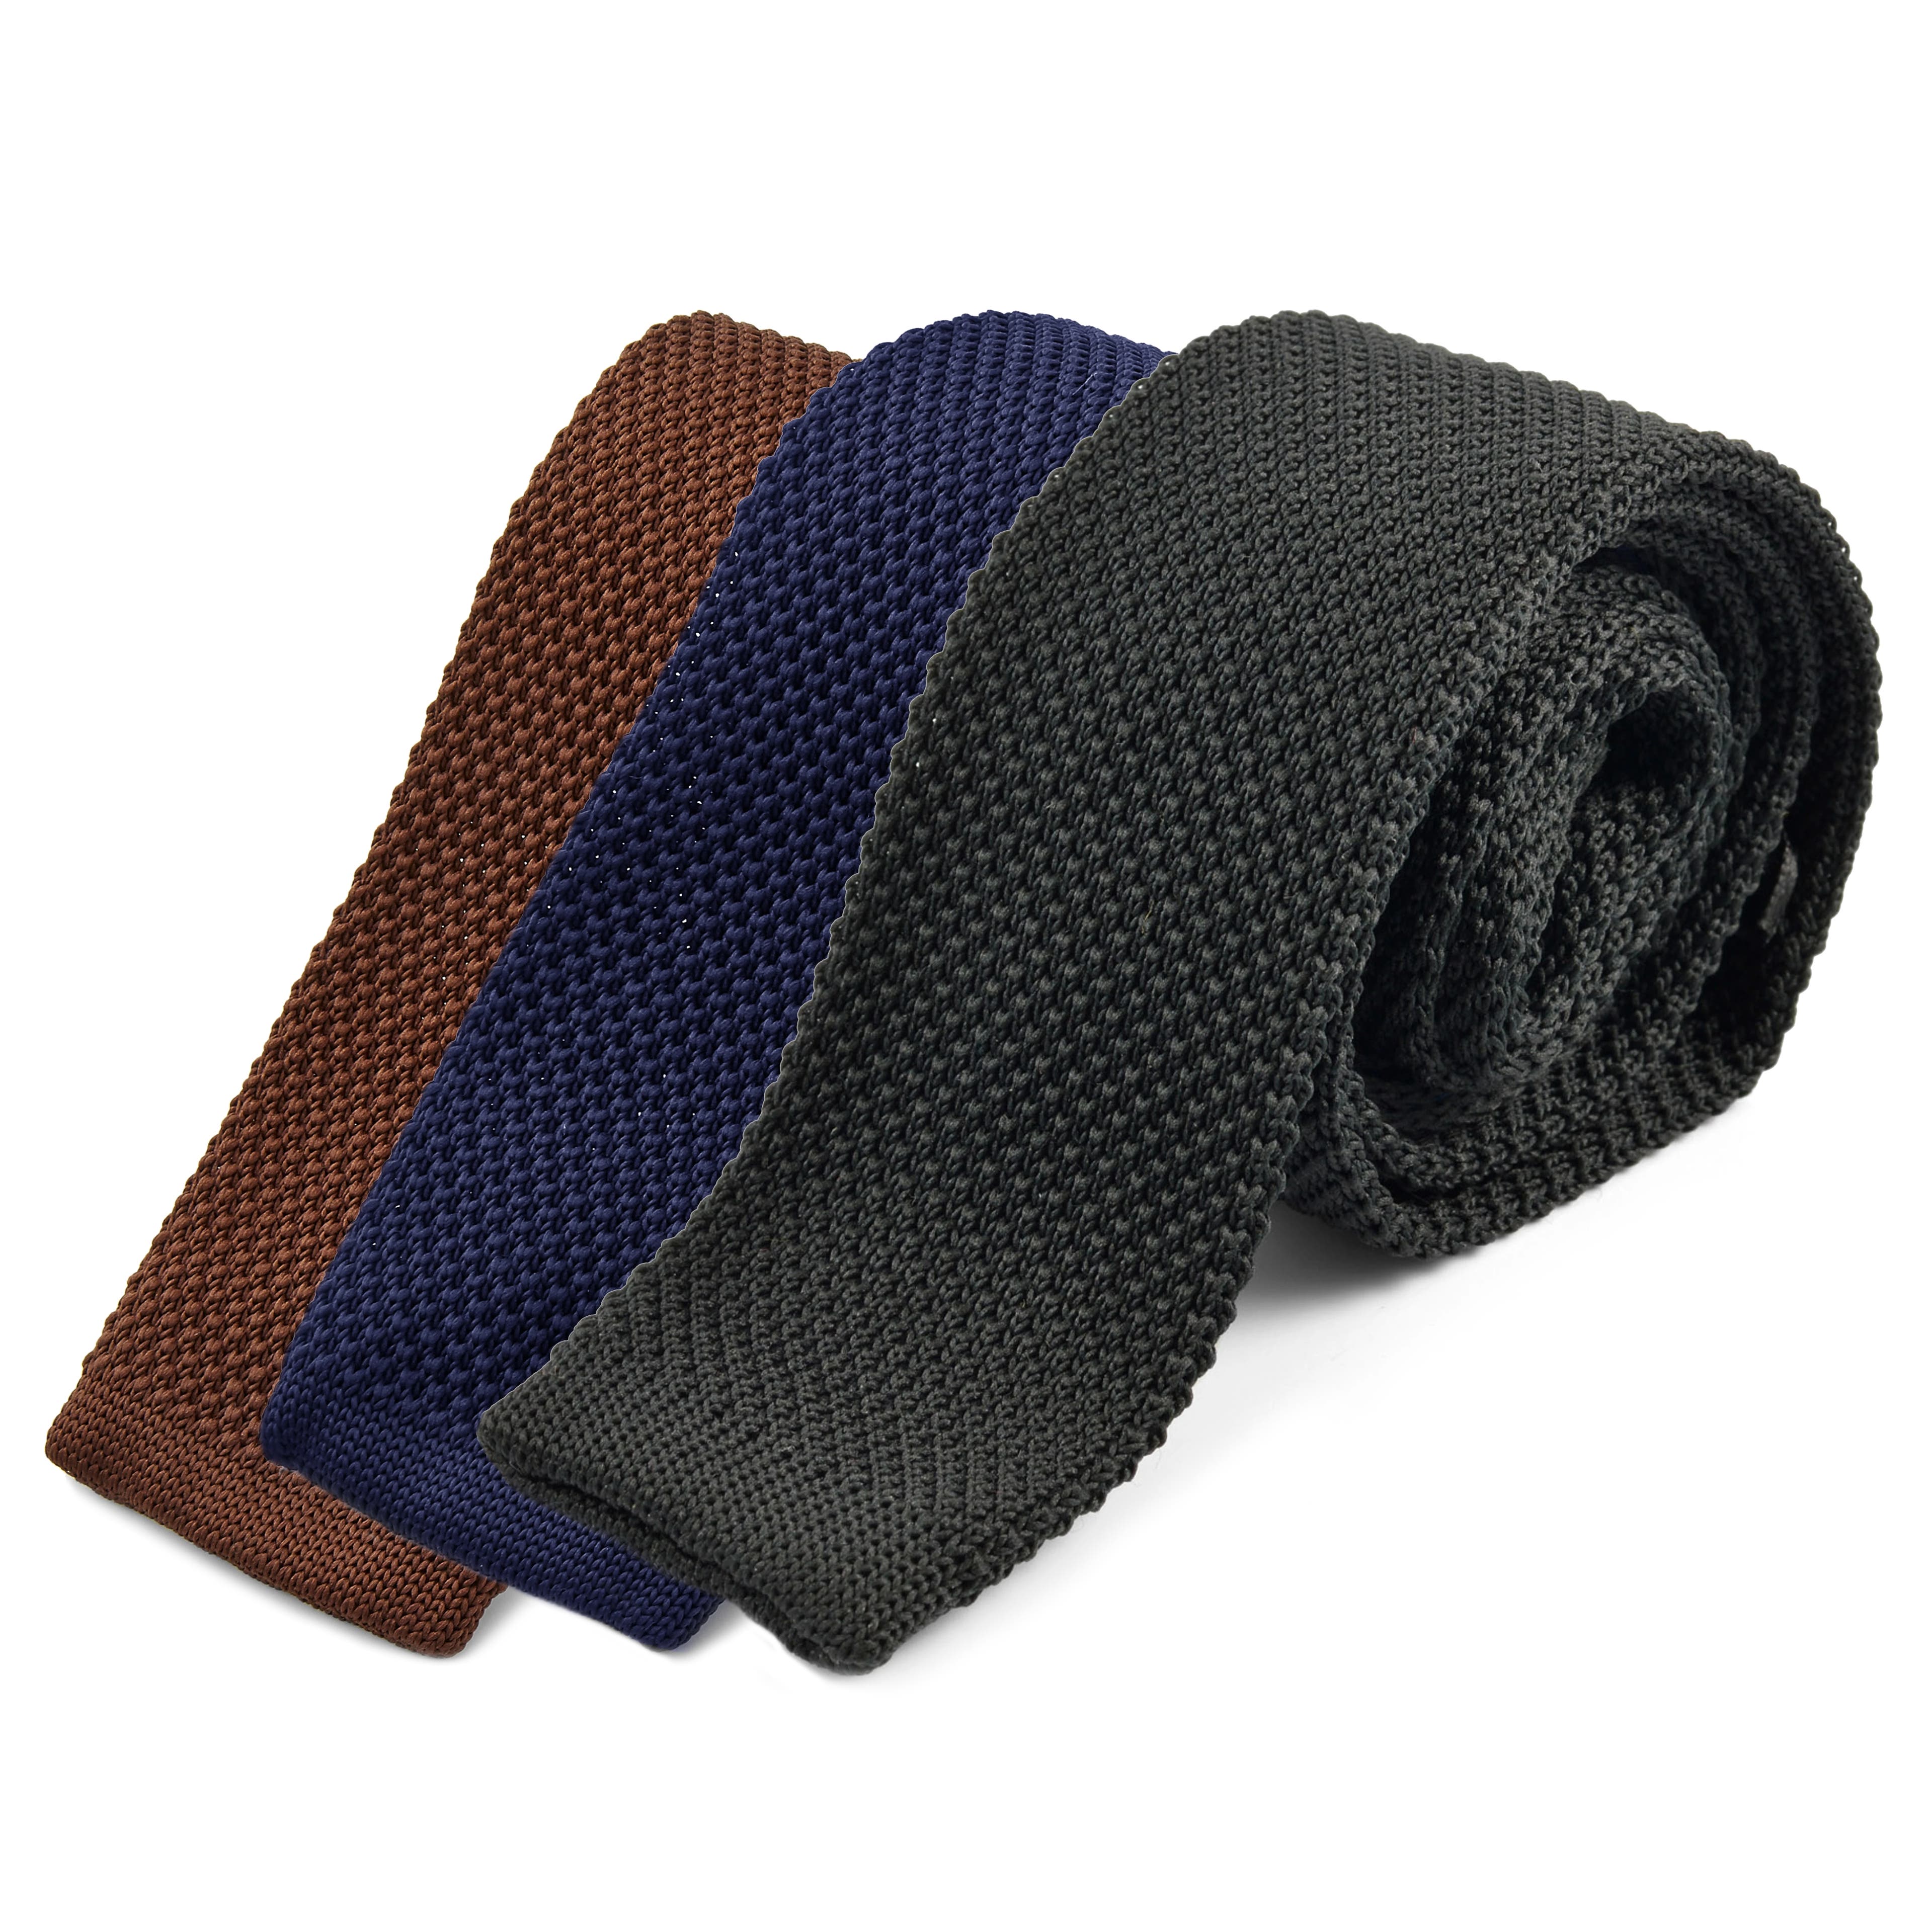 Knitted Necktie Set